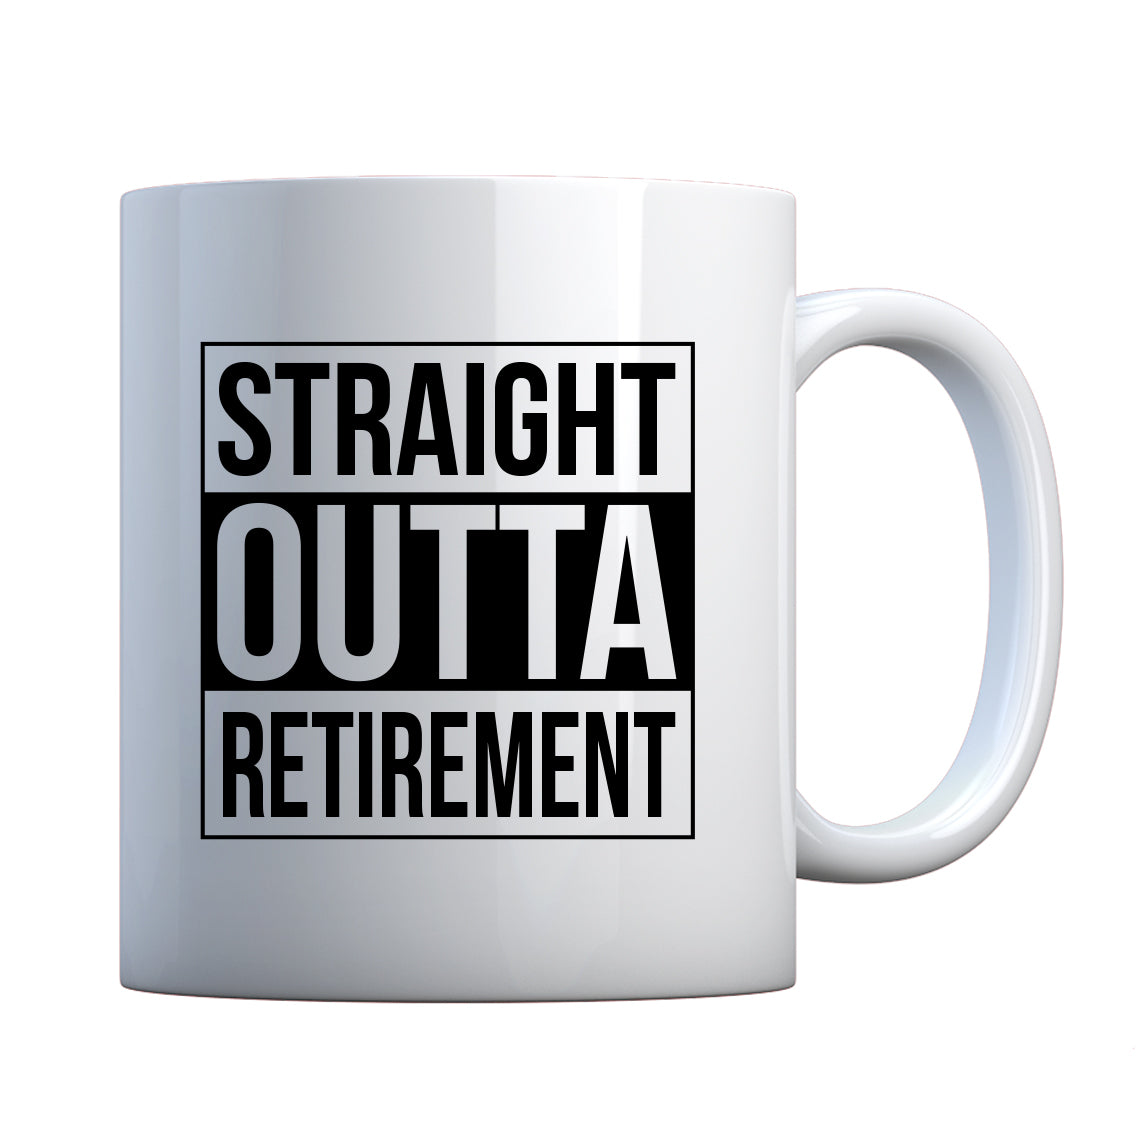 Straight Outta Retirement Ceramic Gift Mug